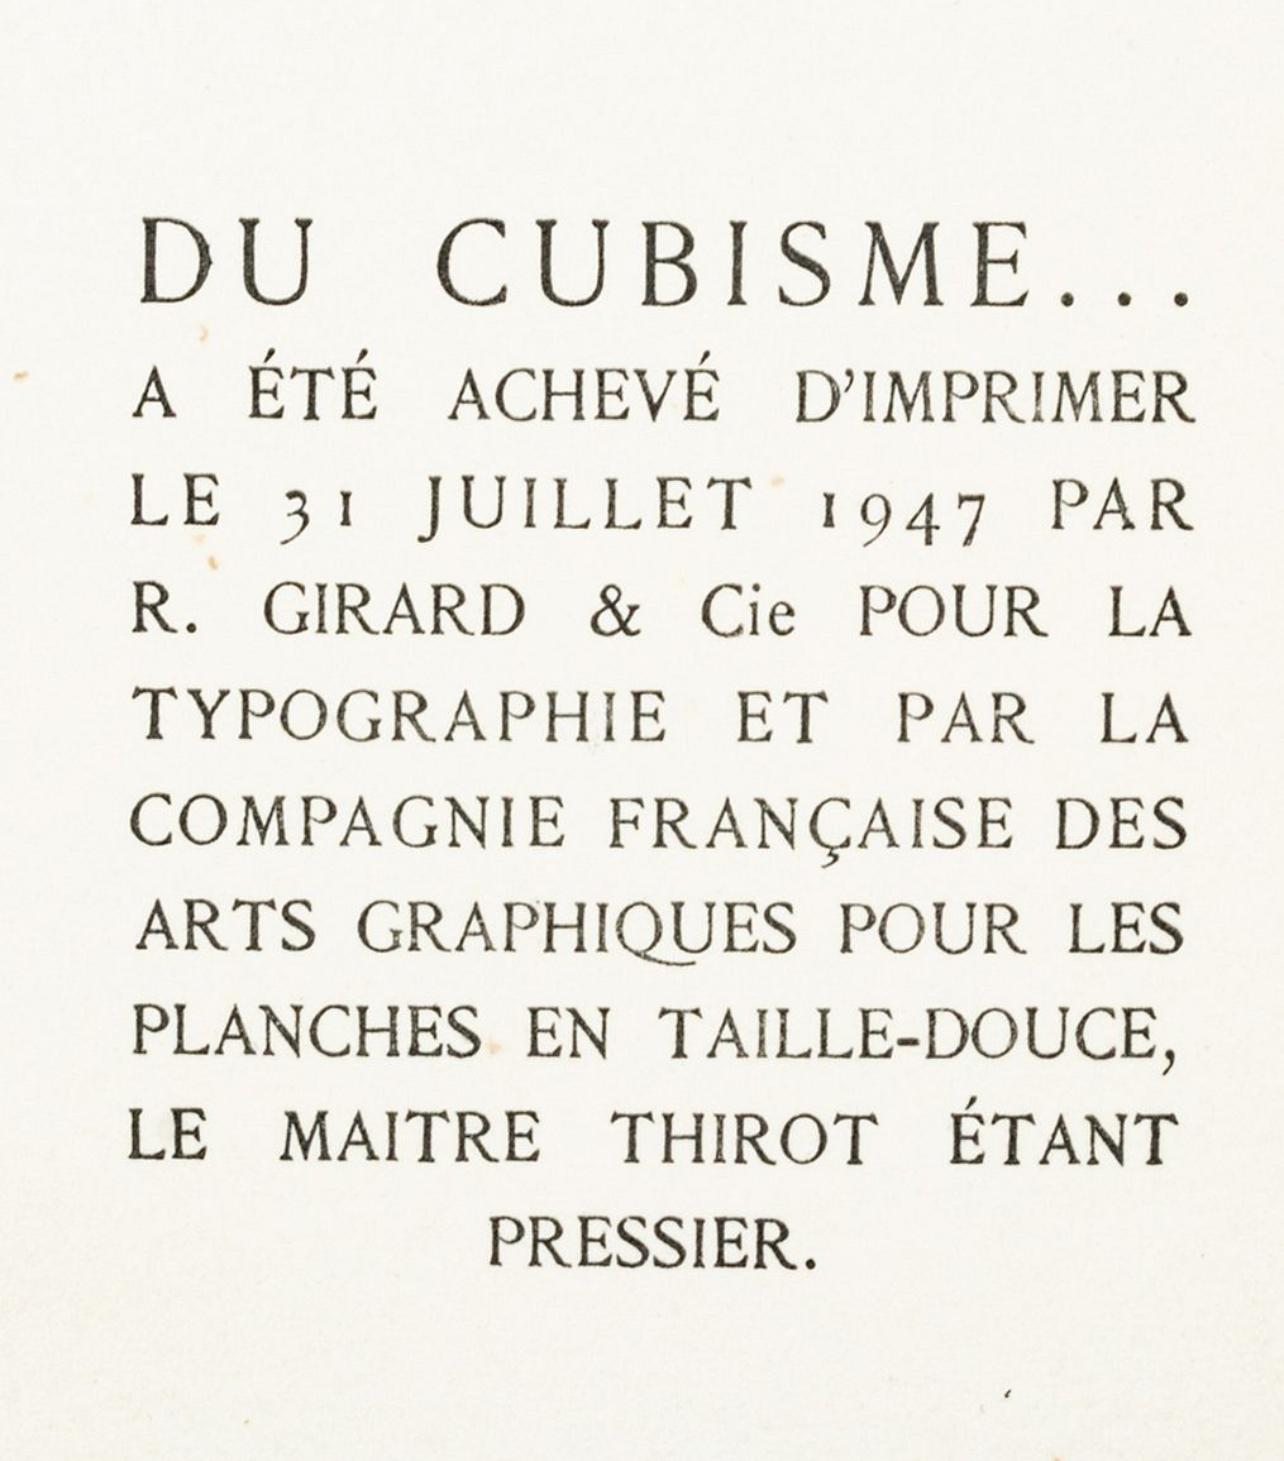 Picabia, Composition, Du cubisme (after) For Sale 1